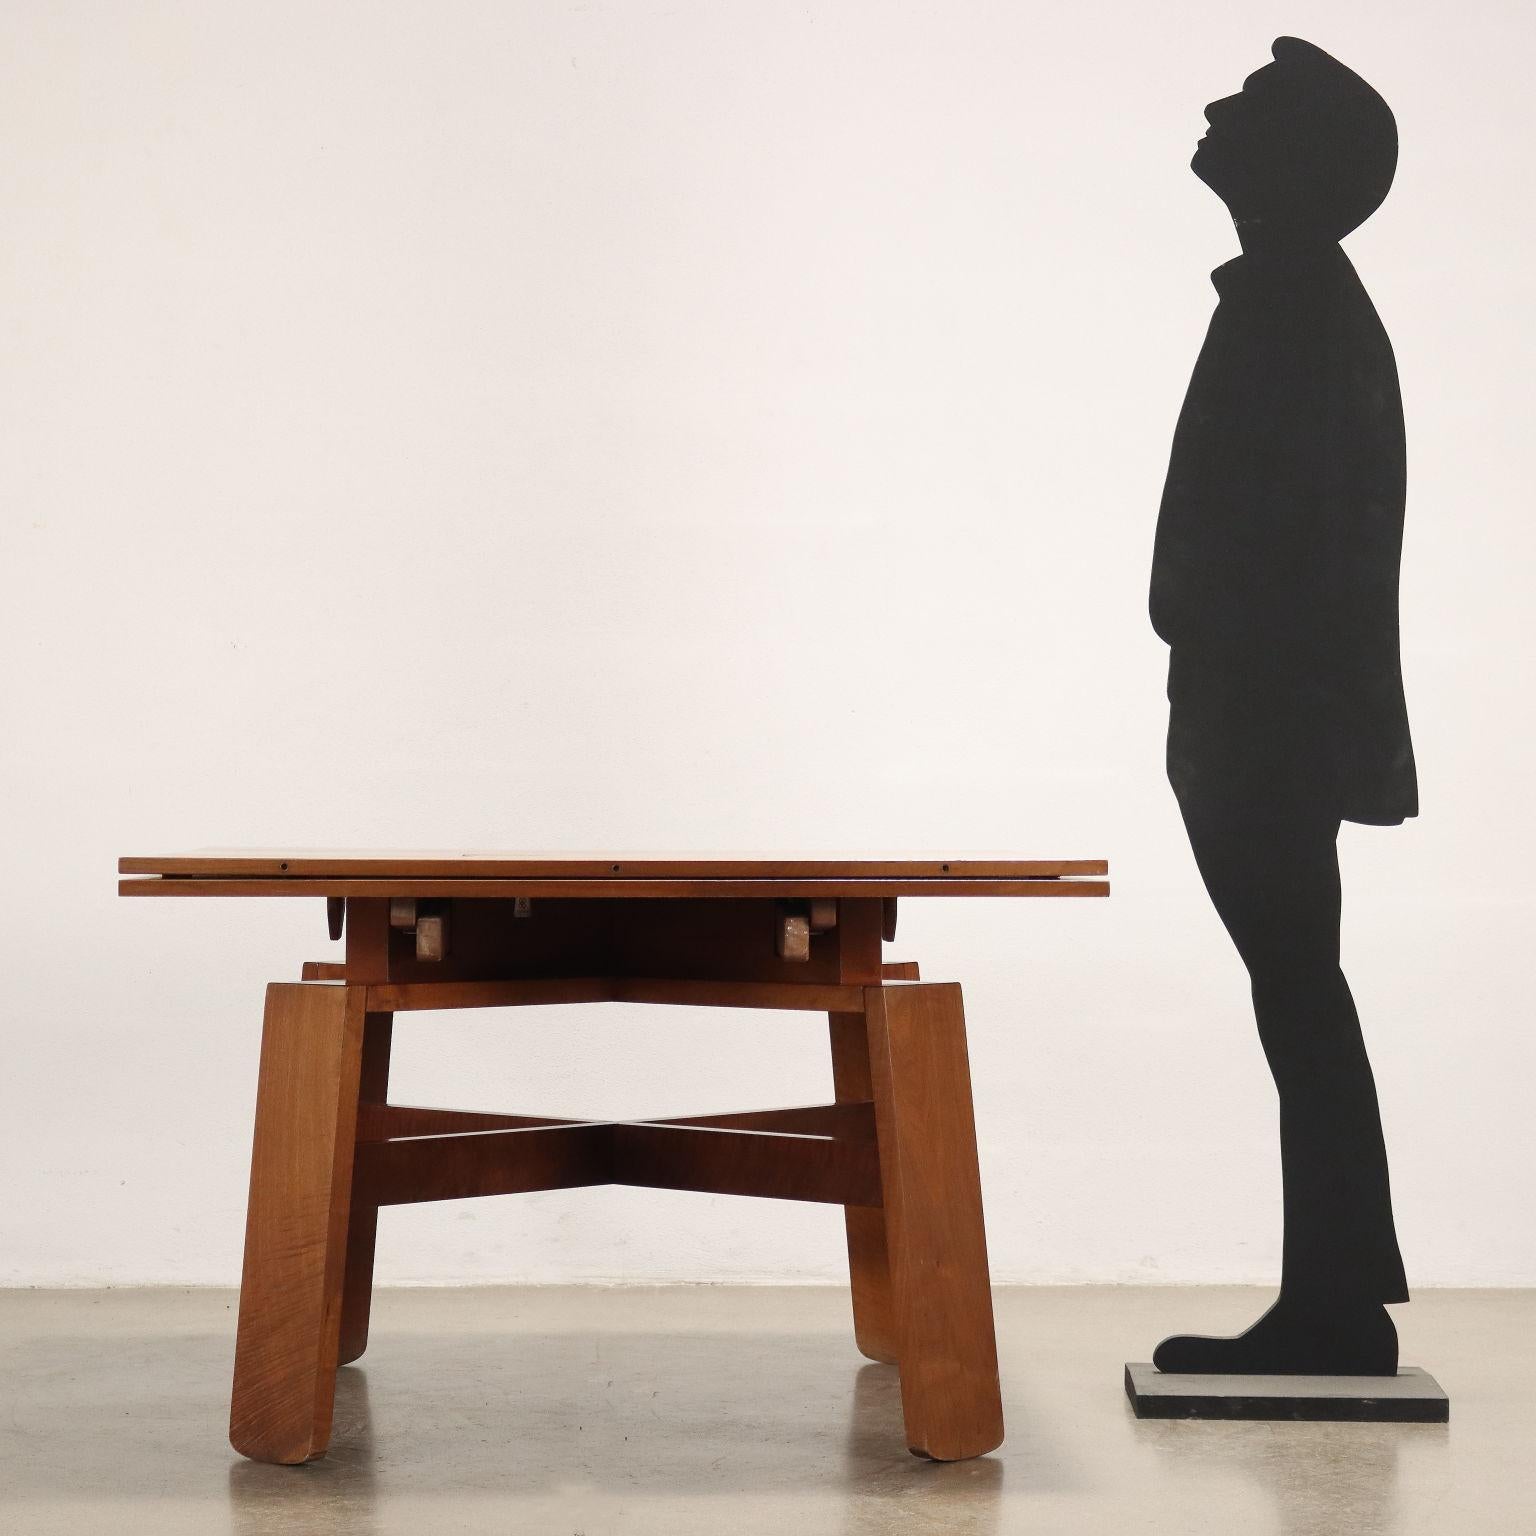 Ausziehbarer Tisch aus nussbaumfurniertem Holz, komplett mit Original-Keramik; Silvio Coppola entwarf diese Möbelserie in den 1960er Jahren für Bernini, die das Thema der 